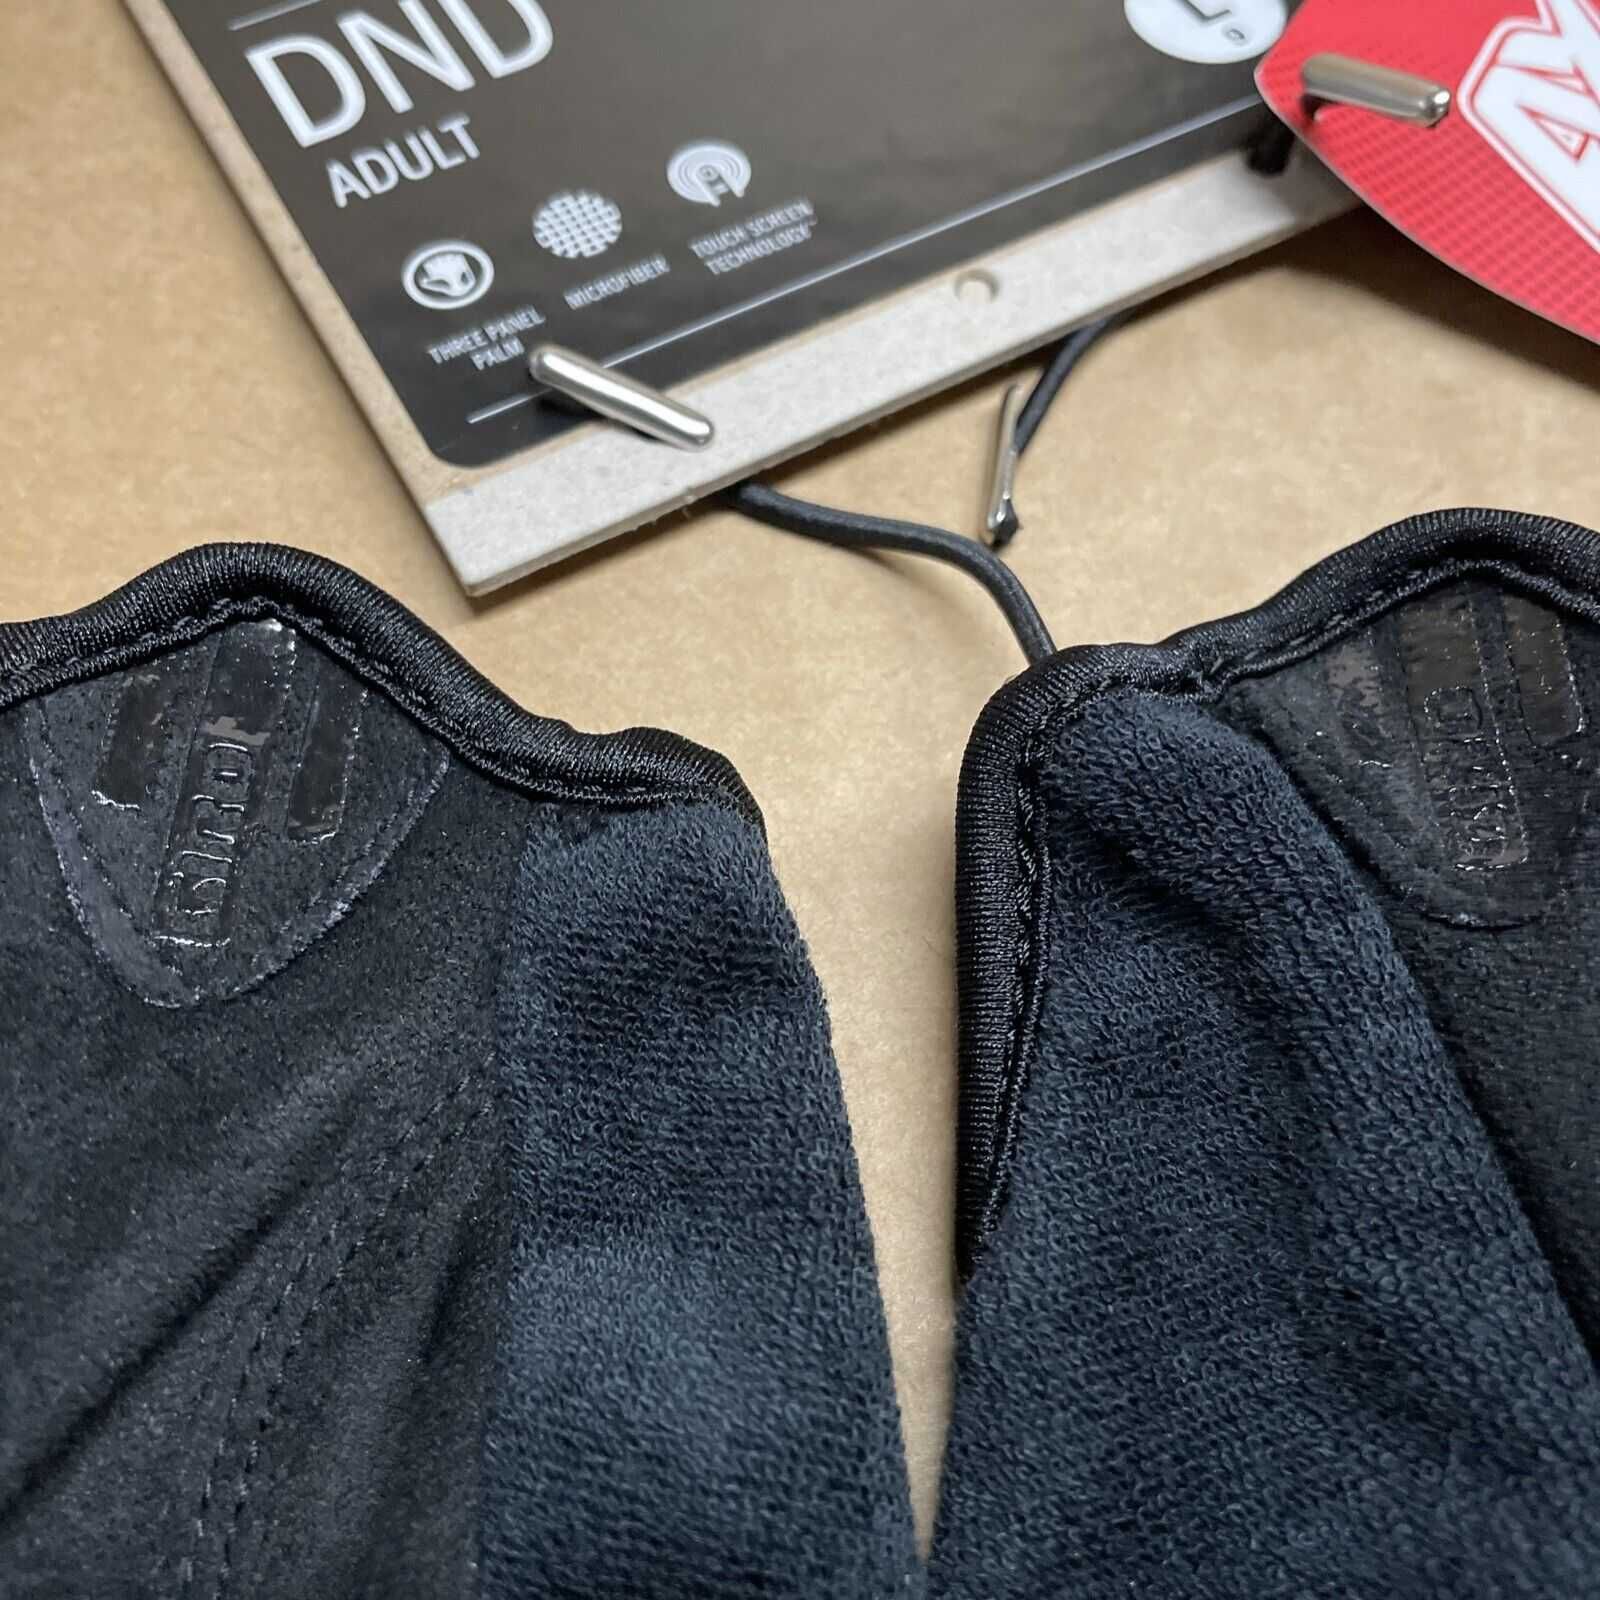 Перчатки Giro DND Gloves Size L Вело Авто TOUCH Велоперчатки Черные